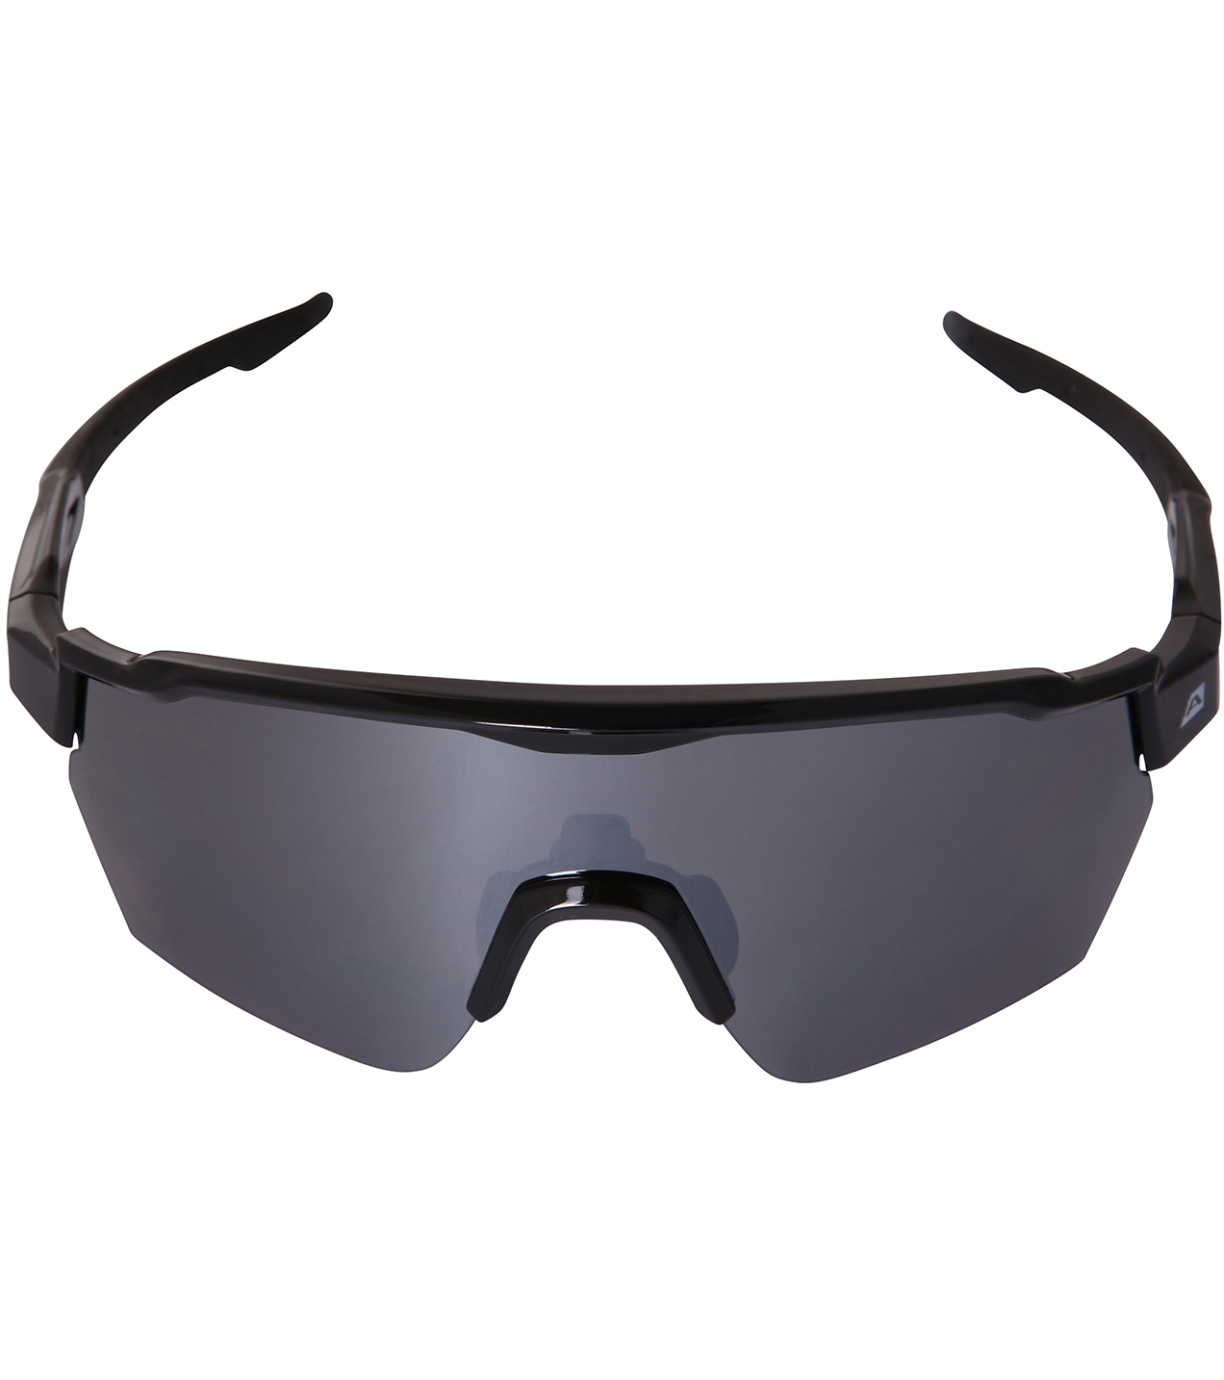 Unisex sportovní brýle FREDE ALPINE PRO černá - světlejší